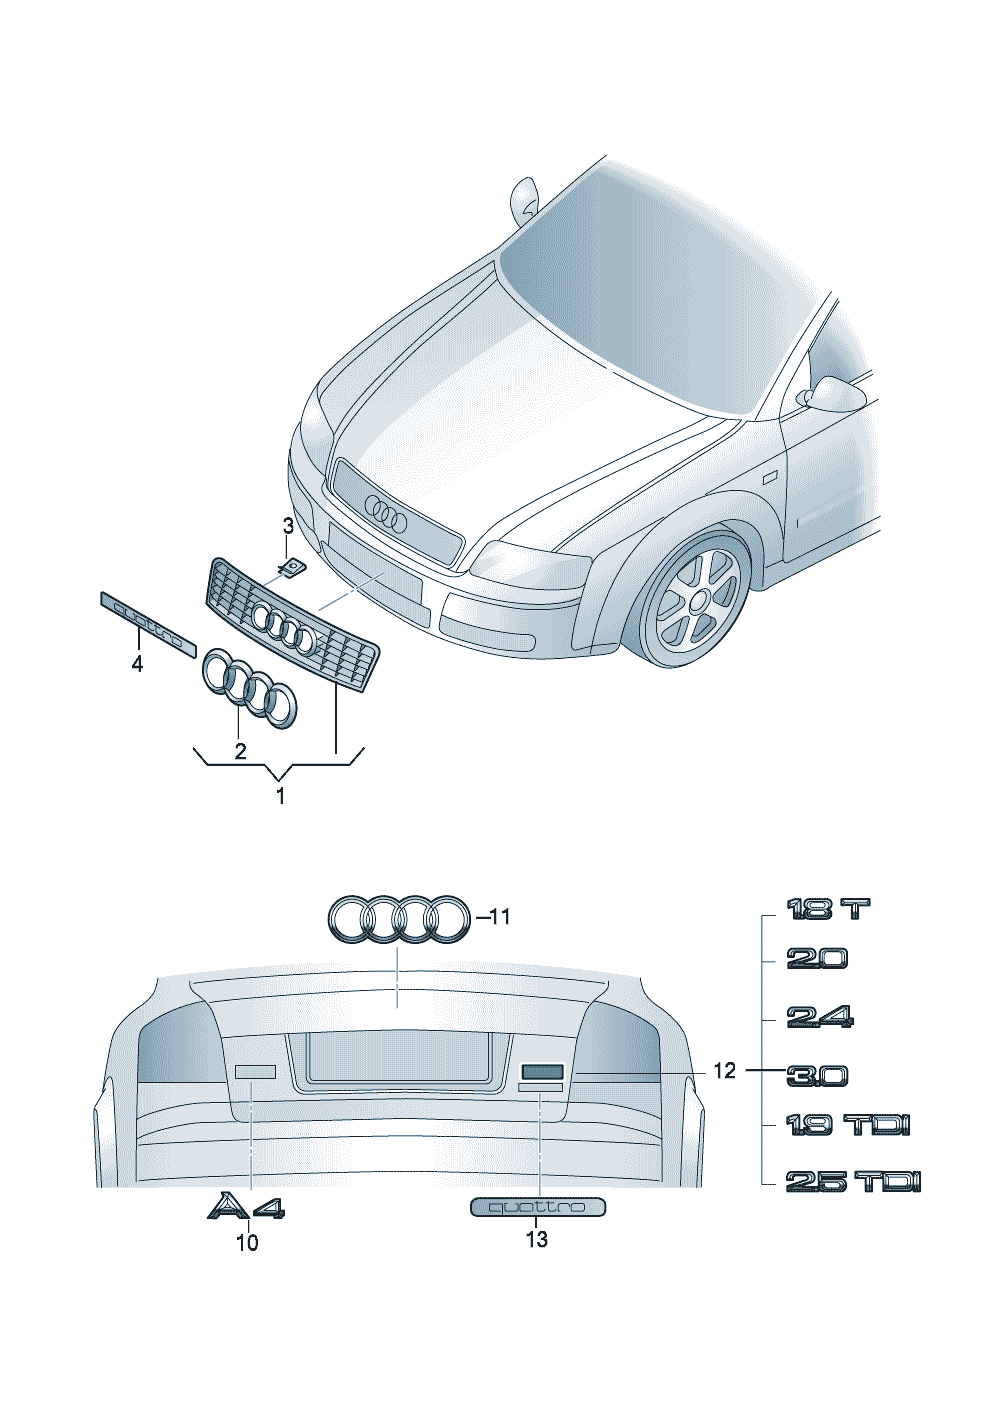 2188 3534 - Audi A4/Avant - a4